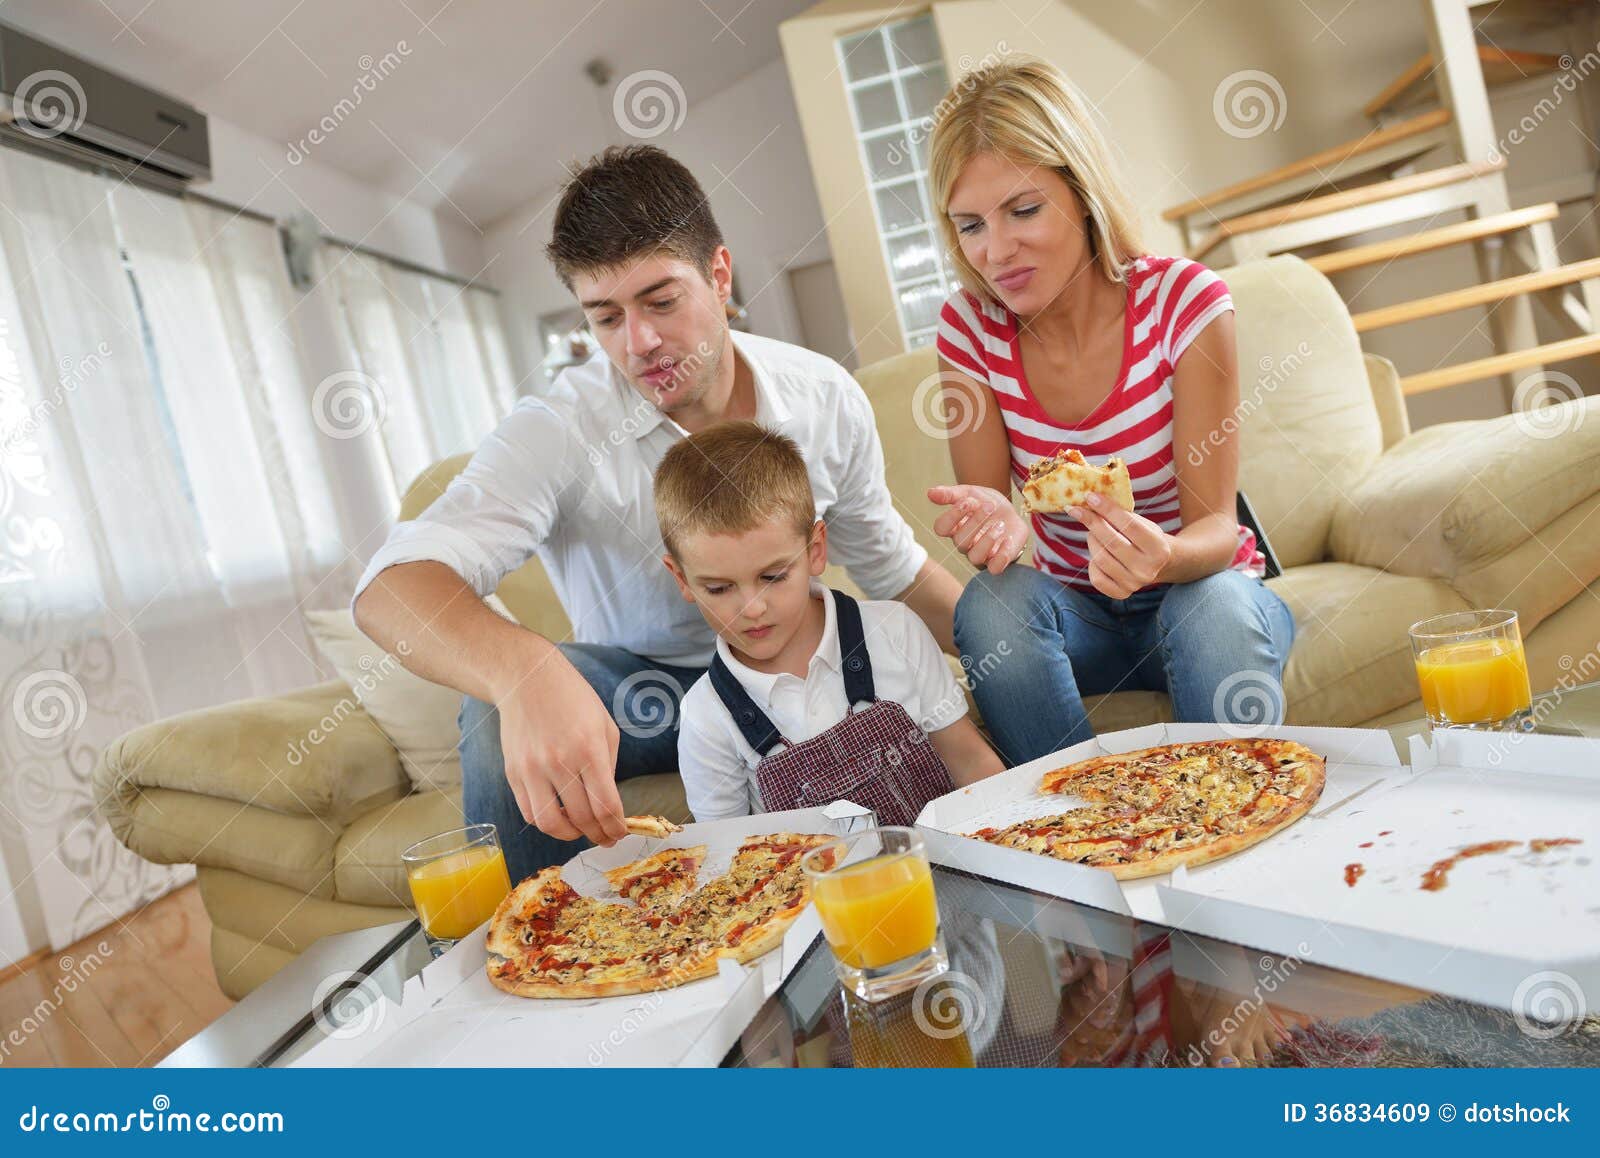 фотосессия с пиццей семейная фото 4